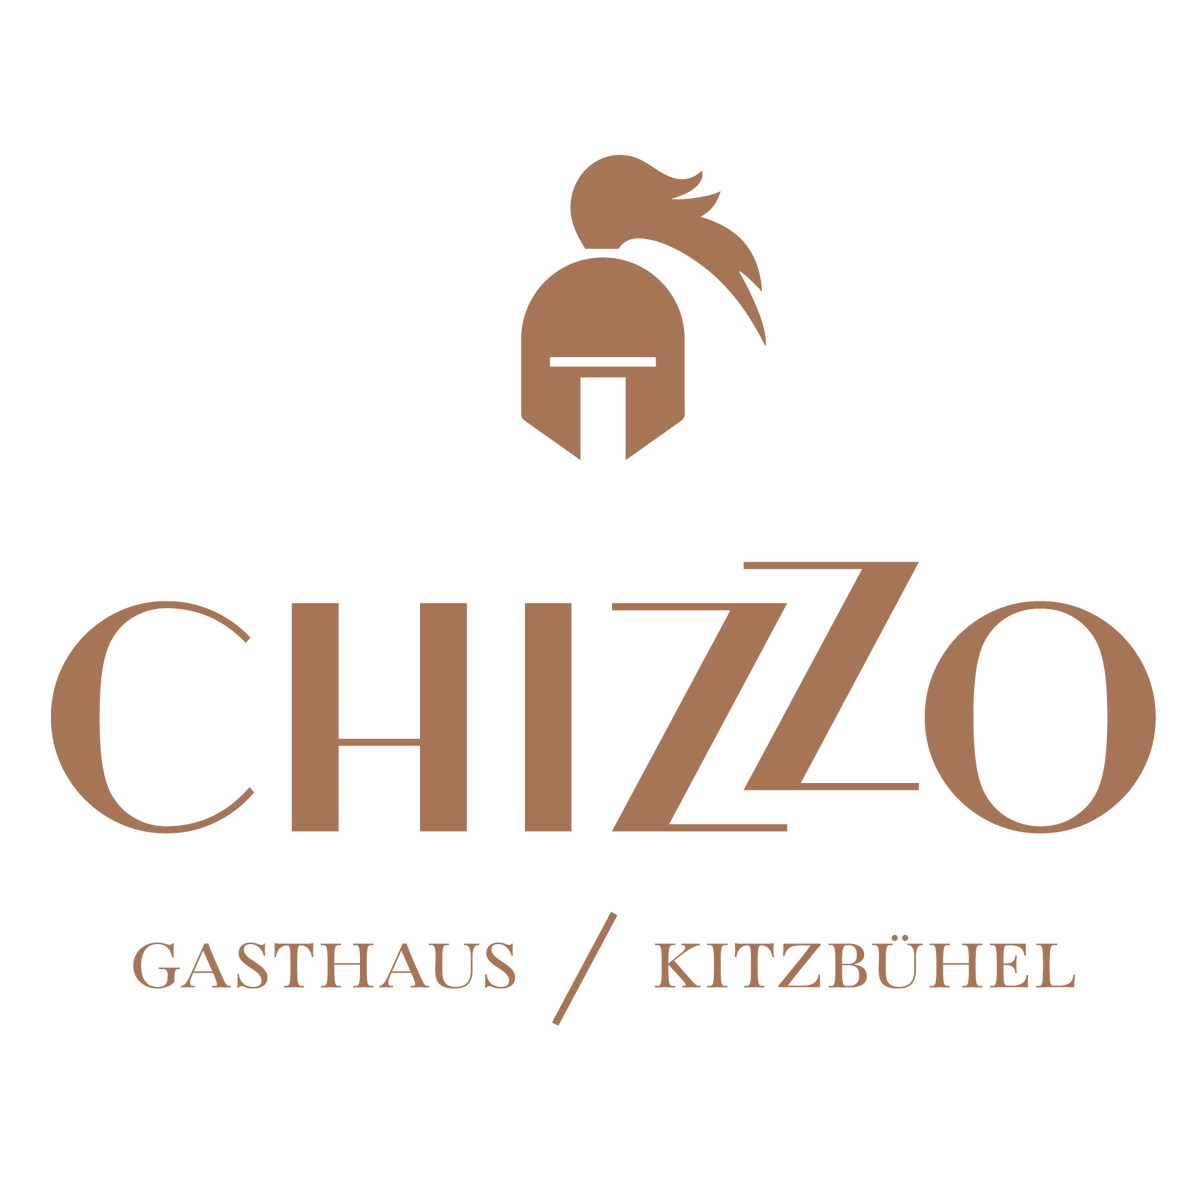 Logo-Chizzo_V1.1.png__PID:8452d21d-daae-43dd-8f1f-e220fec3fbdf